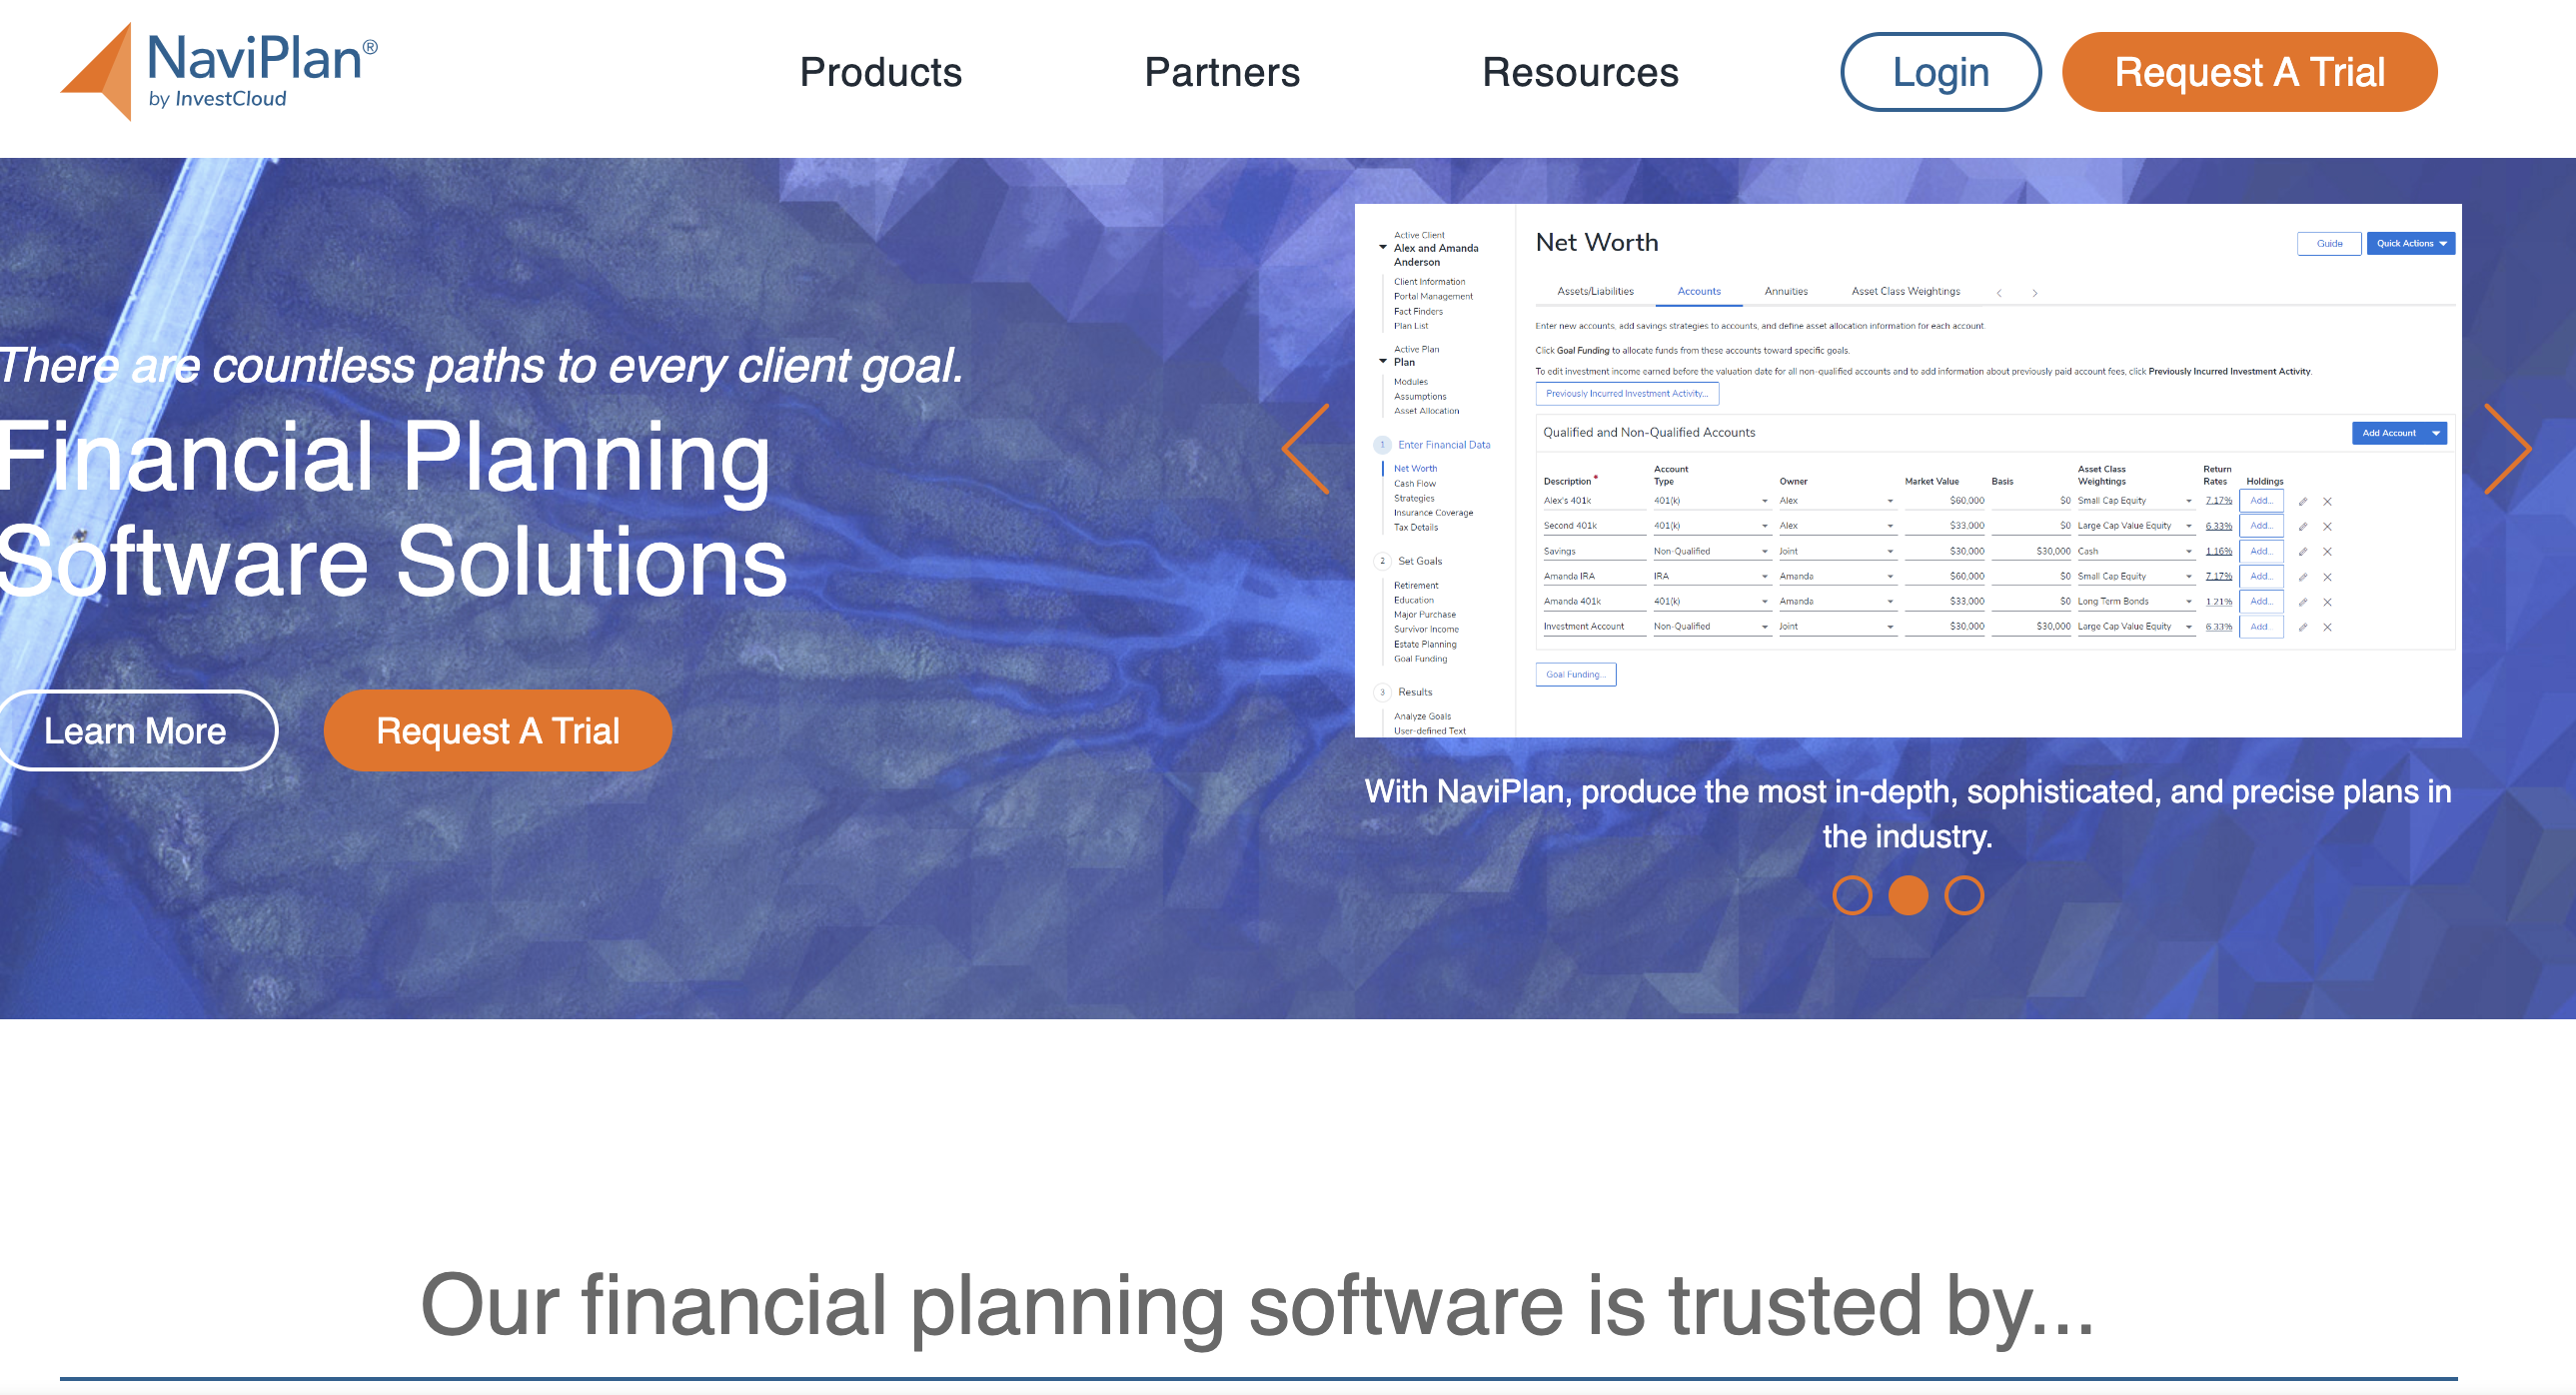 SmartAsset: Portfolio Visualizer Tool Options for Financial Advisors